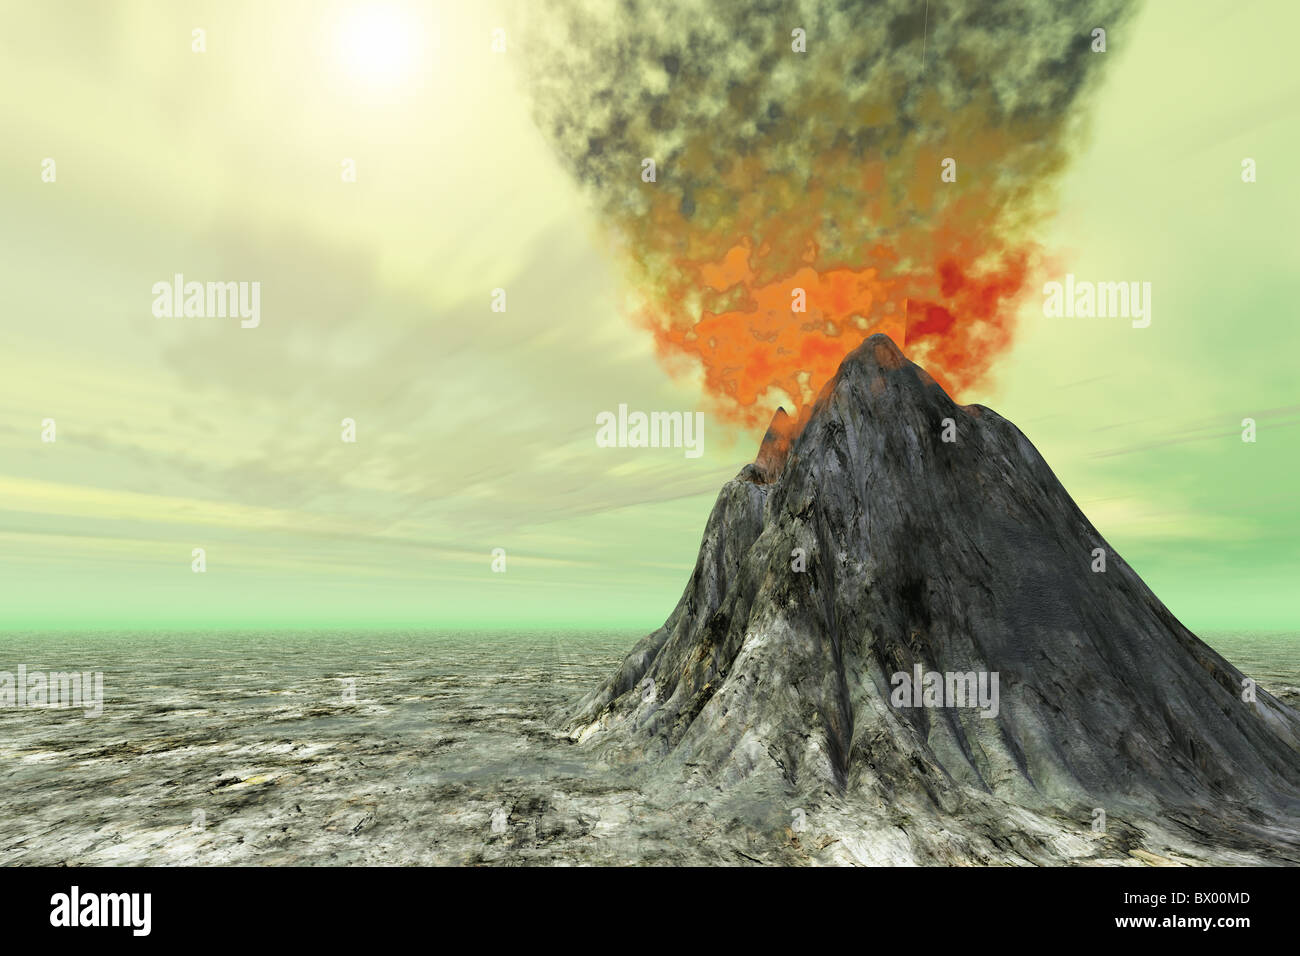 Schwefel Himmel - ein Vulkan mit dem Rauch, Asche und Feuer. Stockfoto